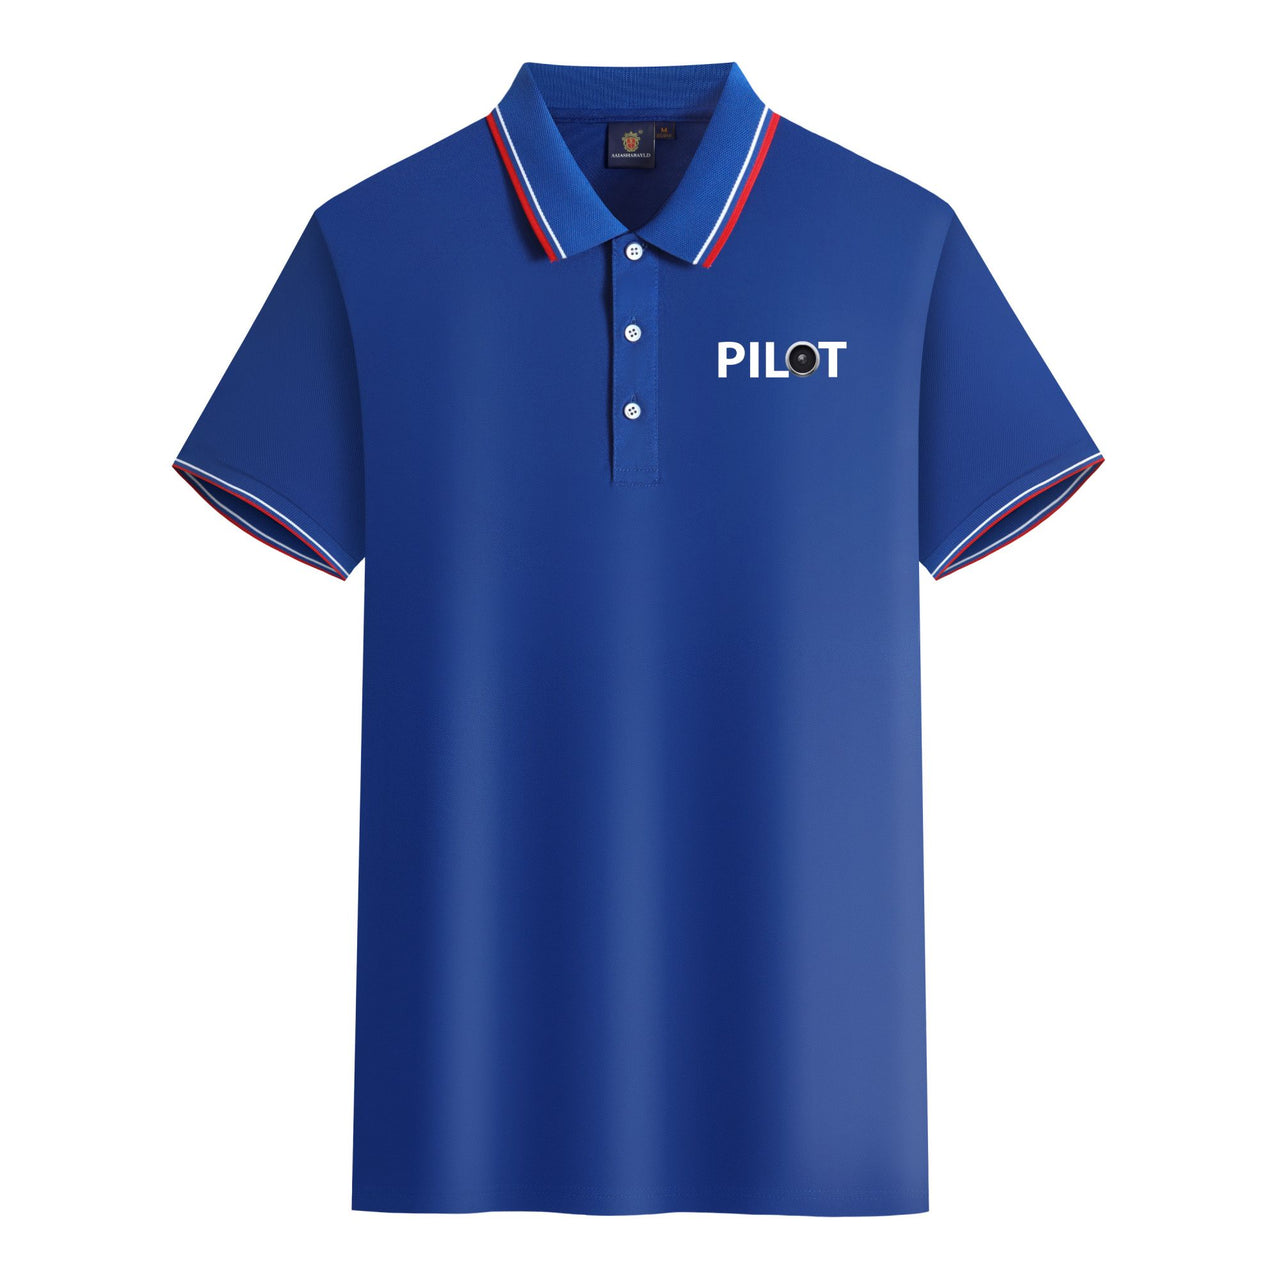 Pilot & Jet Engine Designed Stylish Polo T-Shirts